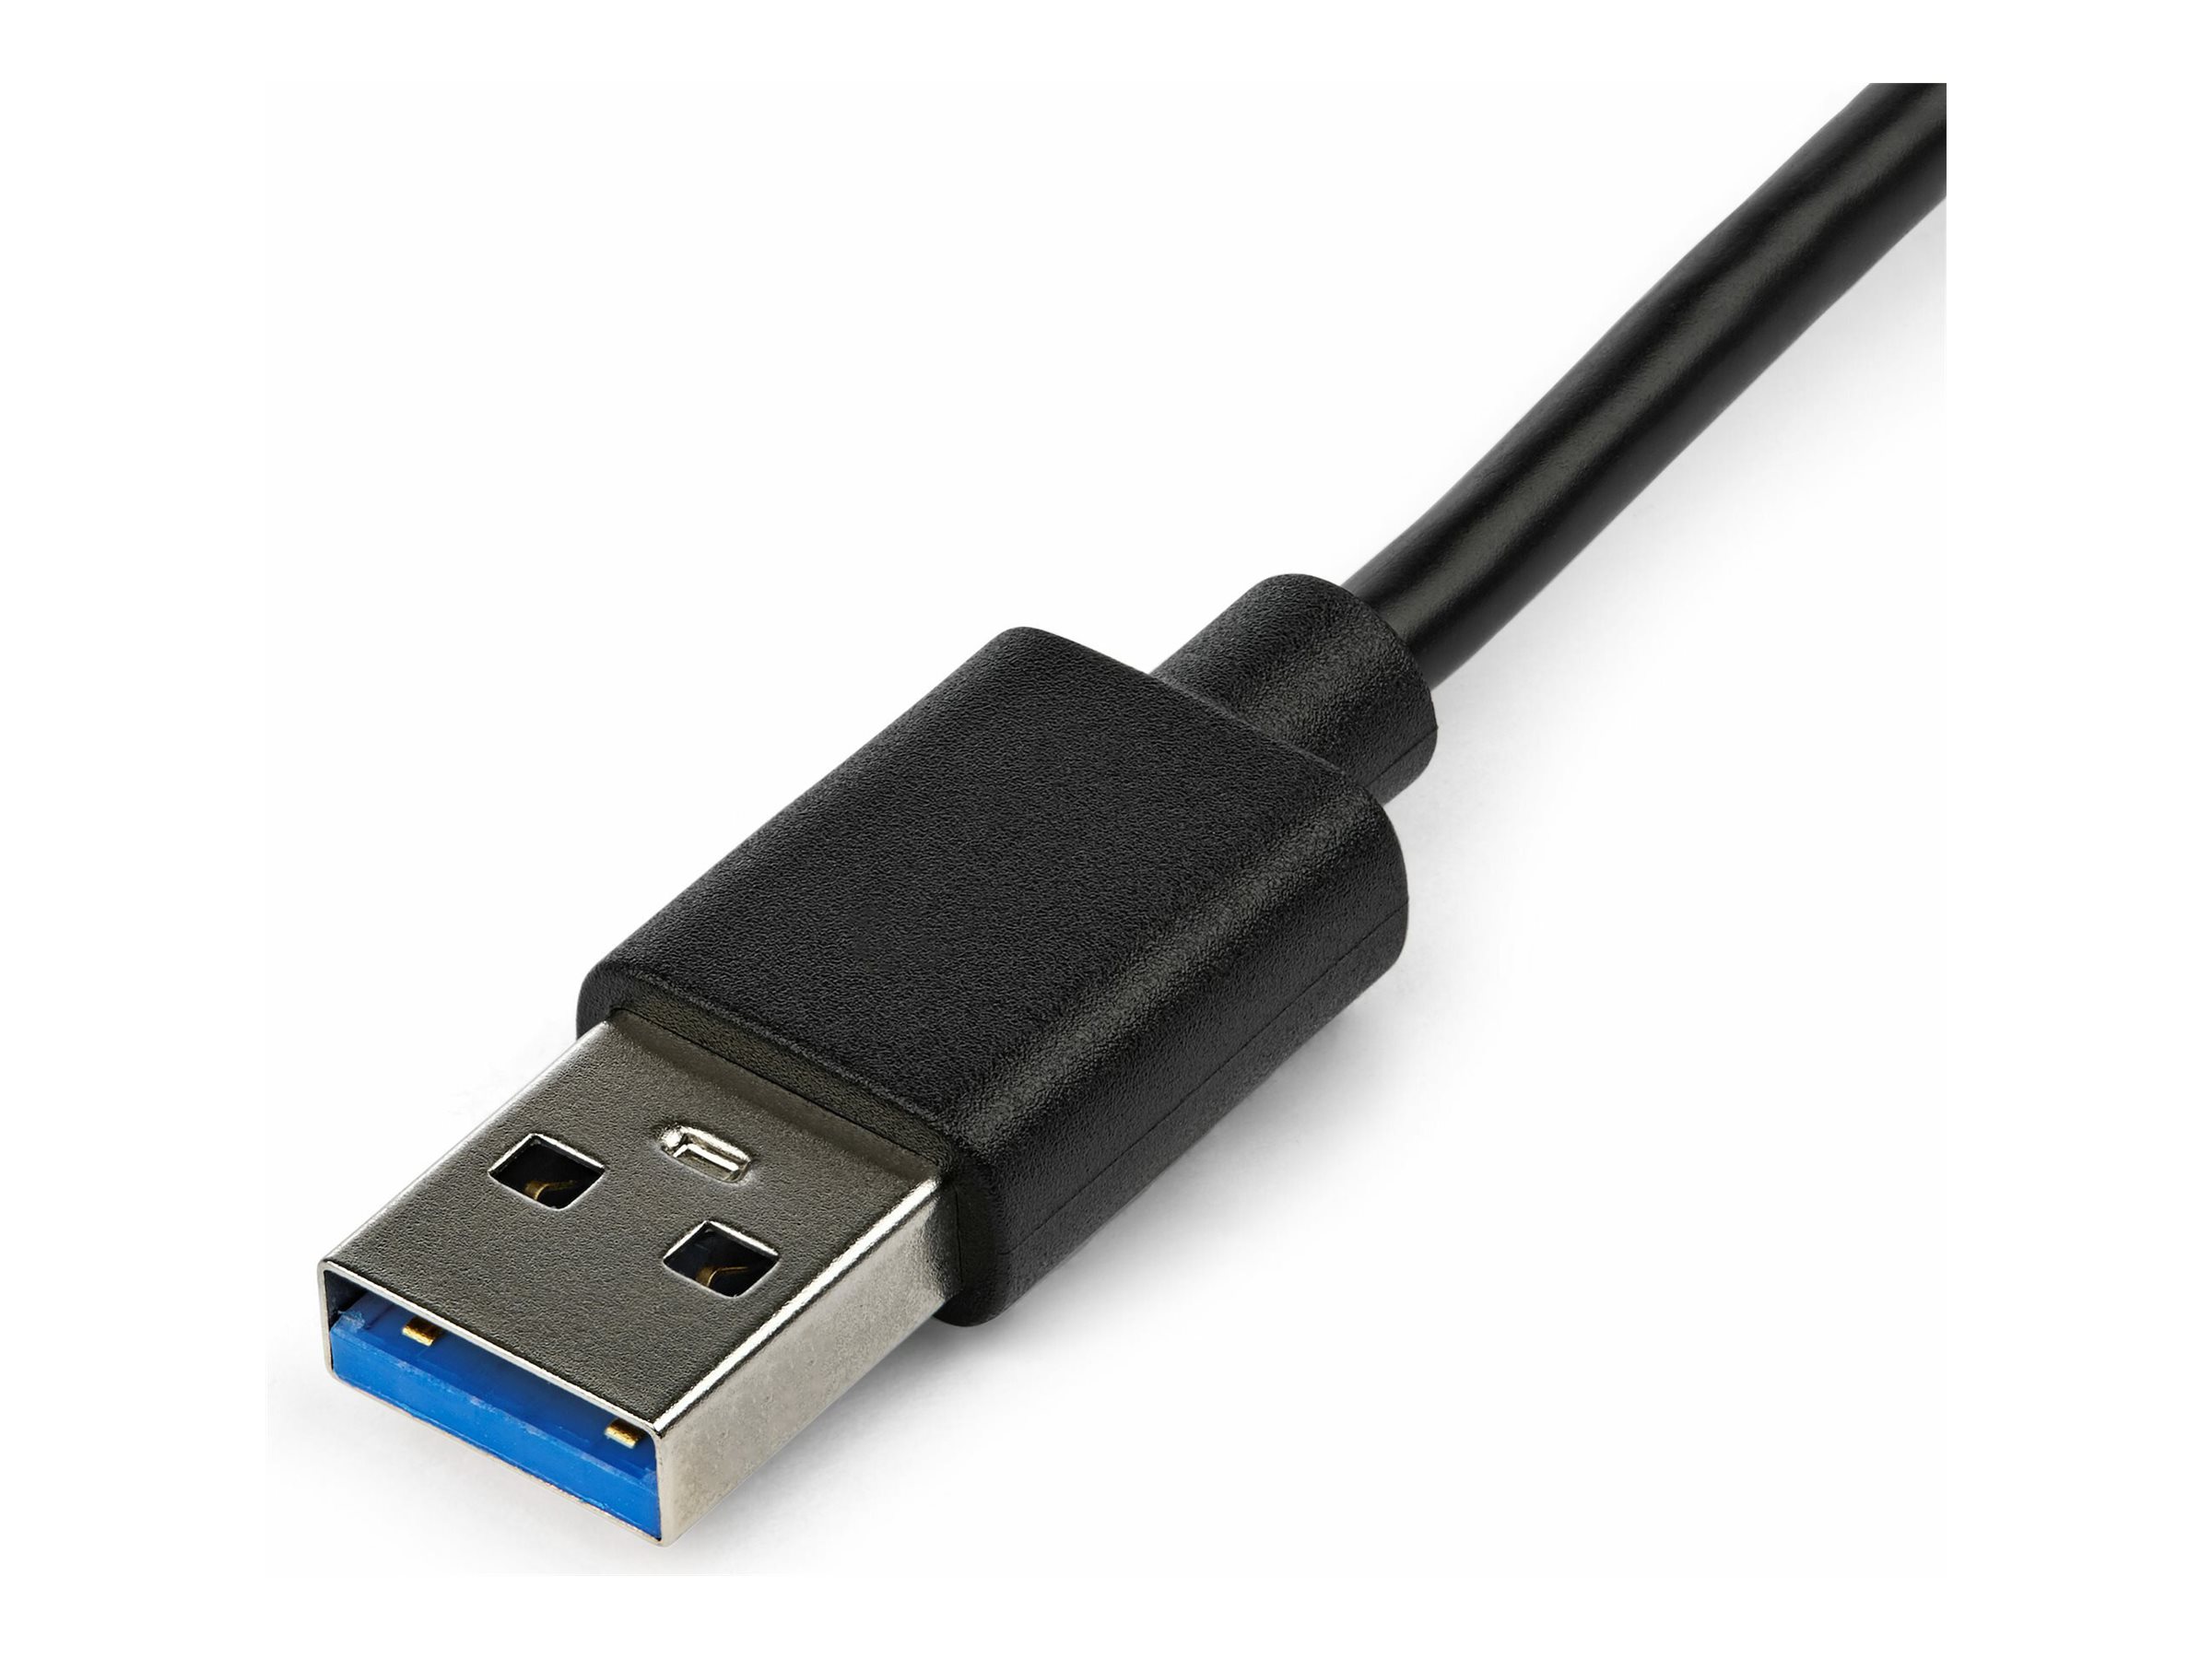 StarTech.com Adaptateur USB 3.0 vers HDMI, 4K 30Hz Ultra HD, certifié DisplayLink, convertisseur d'adaptateur d'affichage USB Type-A vers HDMI pour moniteur, vidéo externe et carte graphique, Mac et Windows - Adaptateur USB vers HDMI (USB32HD4K) - Câble adaptateur - Conformité TAA - USB type A mâle pour HDMI femelle - 20 cm - noir - alimentation USB + audio - pour P/N: HDDVIMM3, HDMM12, HDMM15, HDMM1MP, HDMM2MP, HDMM3, HDMM3MP, HDMM50A, HDMM6, HDPMM50 - USB32HD4K - Accessoires pour téléviseurs